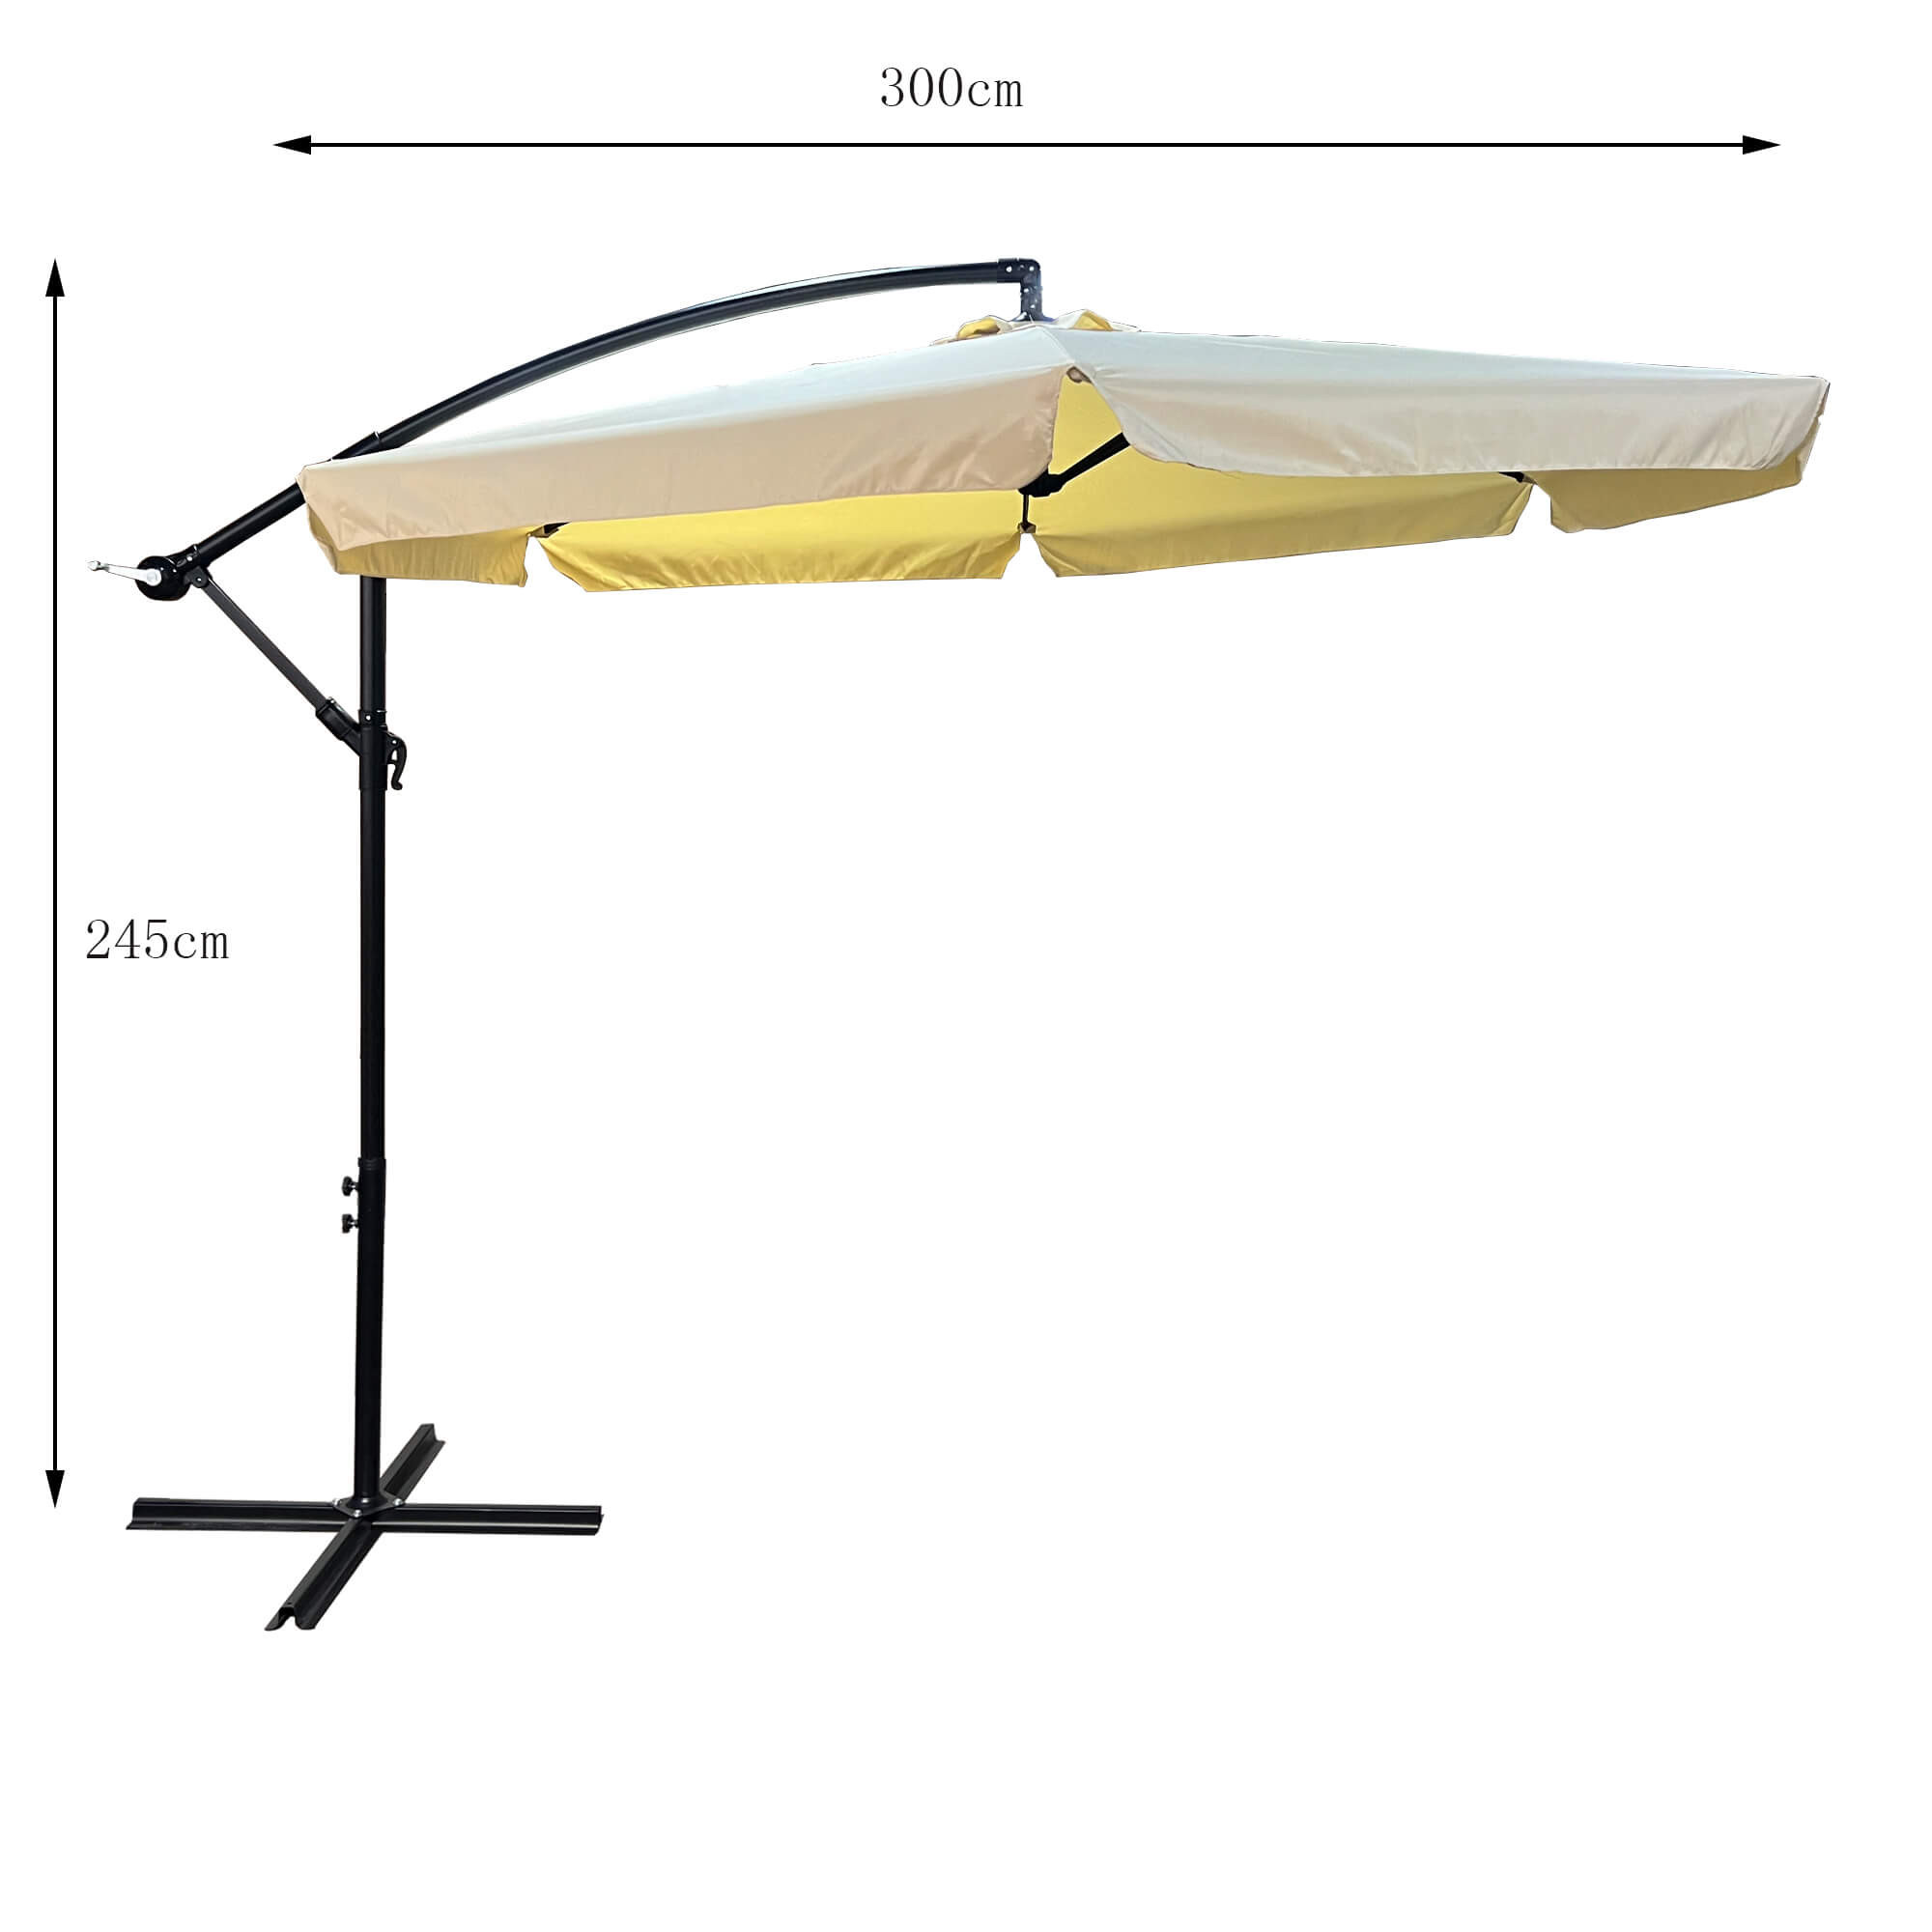 Wymiary 3D - Wodoodporny parasol ogrodowy i tarasowy CYNIA w kolorze beżowym waga 11,7 kg wymiary 300x300x245 cm - AKORD Fabryka Mebli